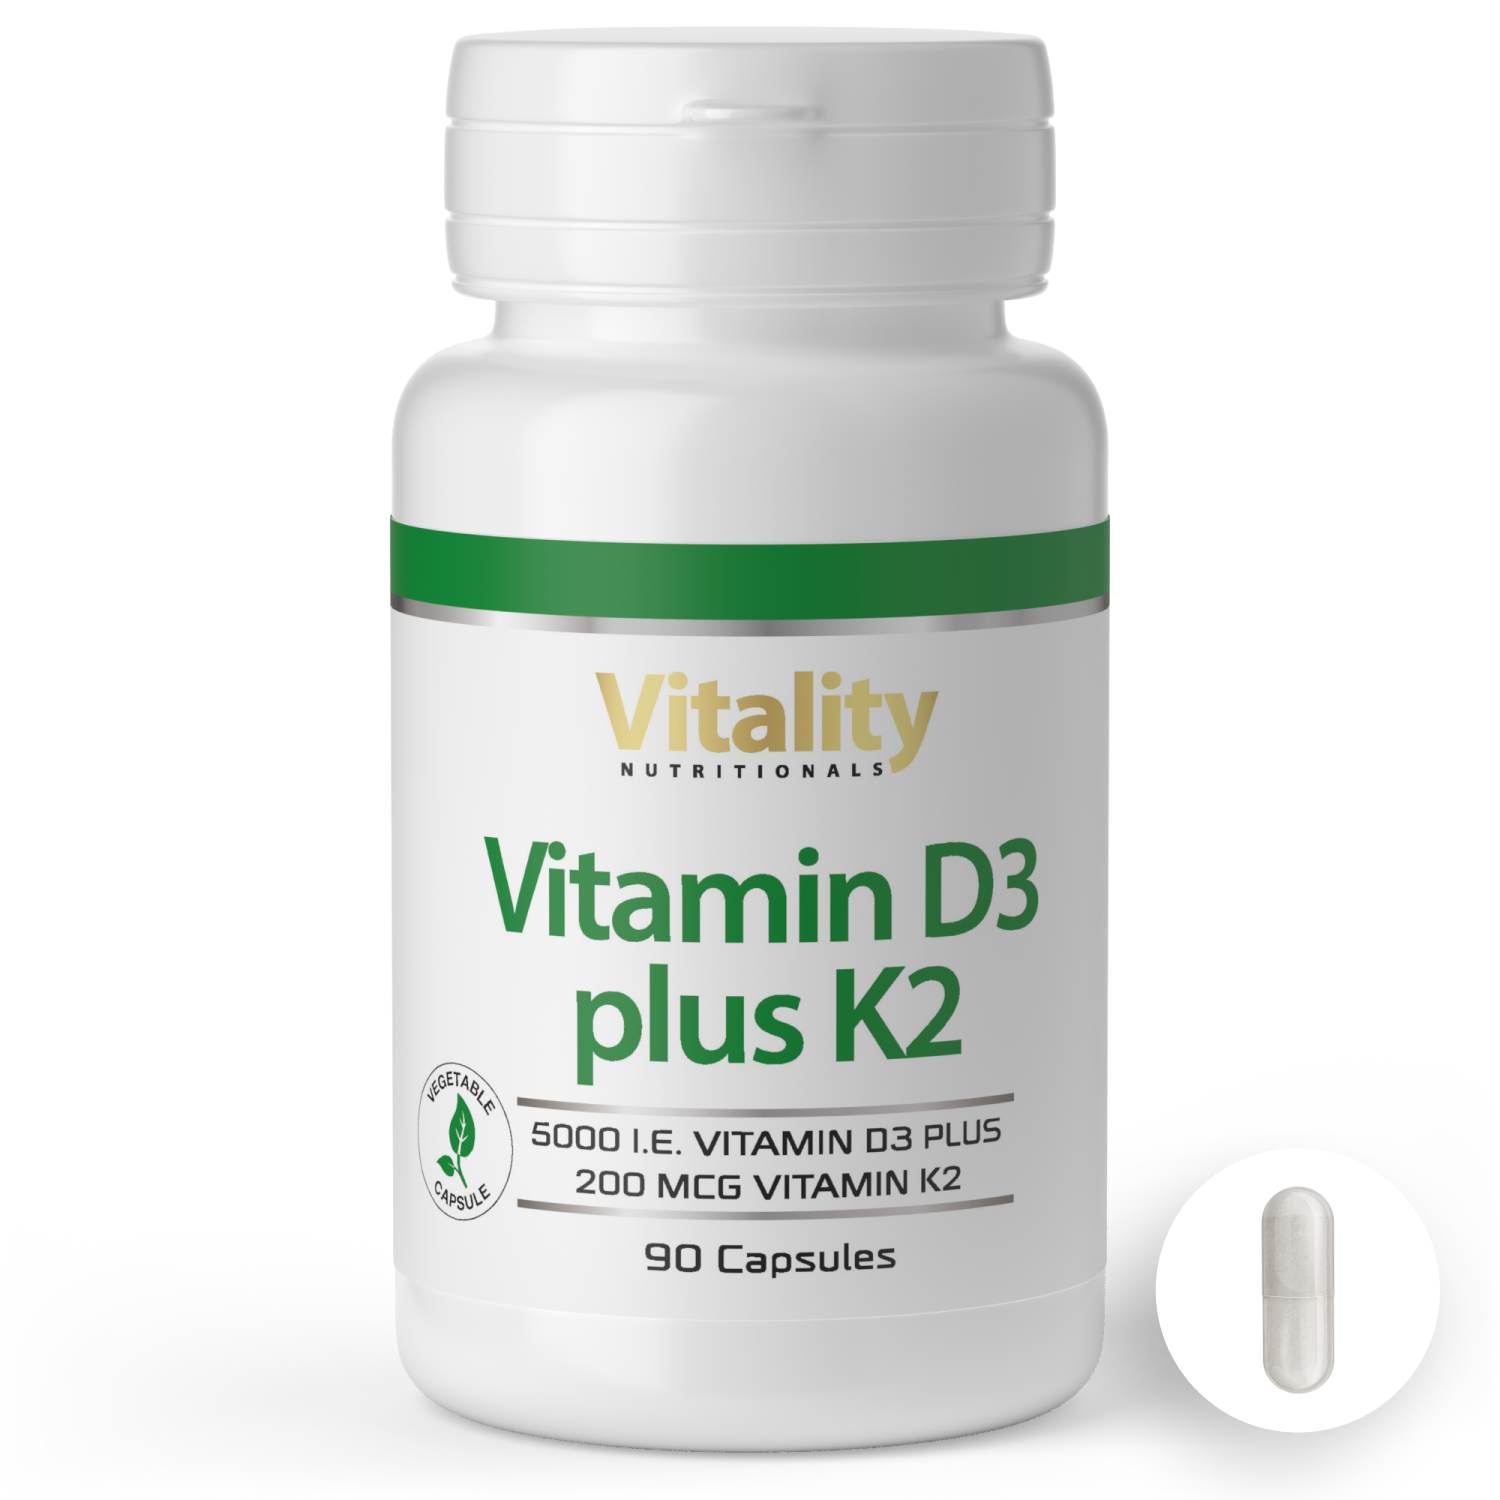 www.vitaminexpress.org